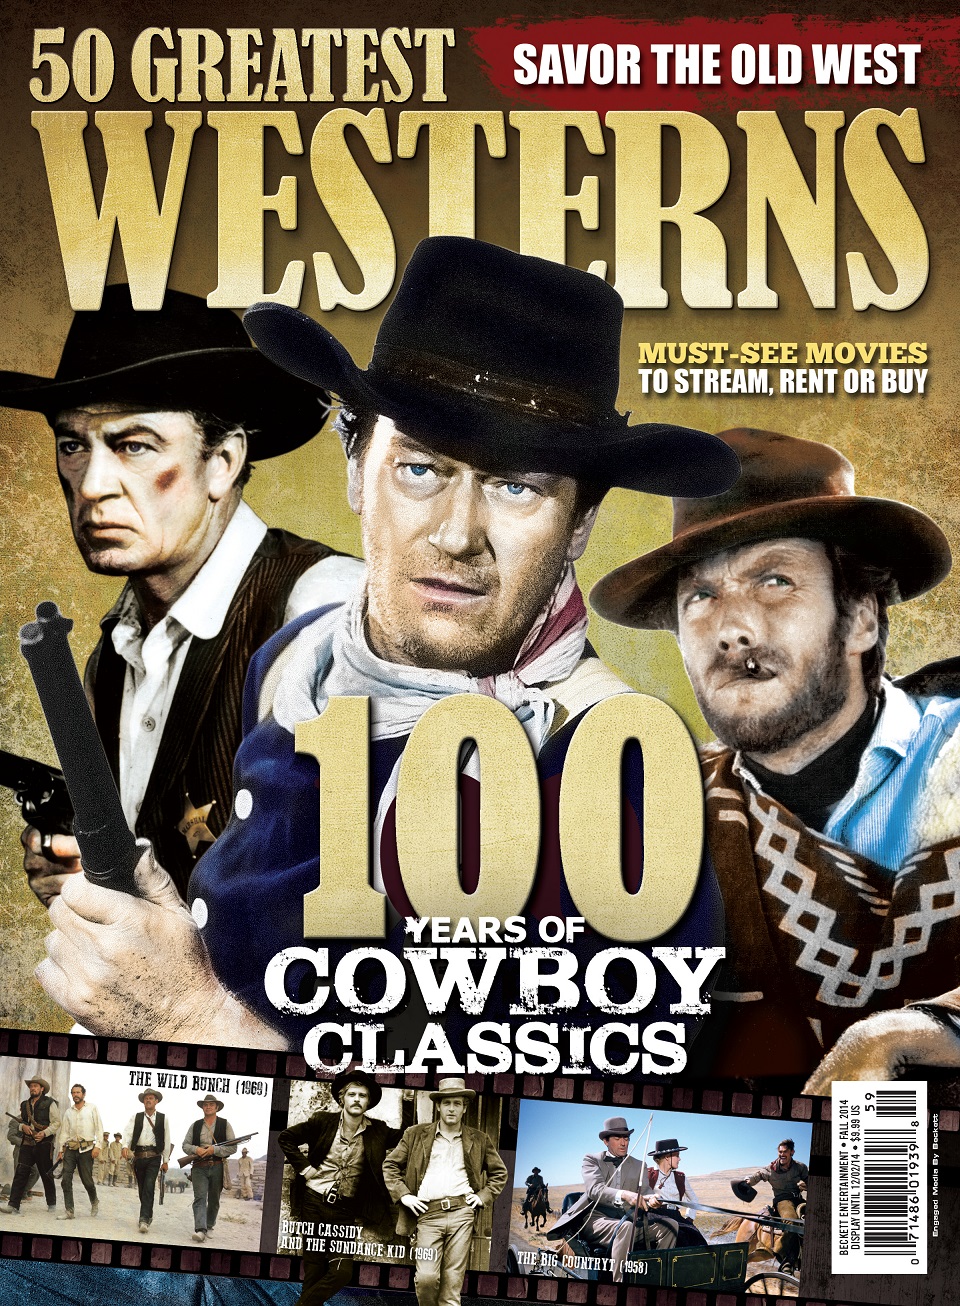 50 Greatest Westerns Fall 2014